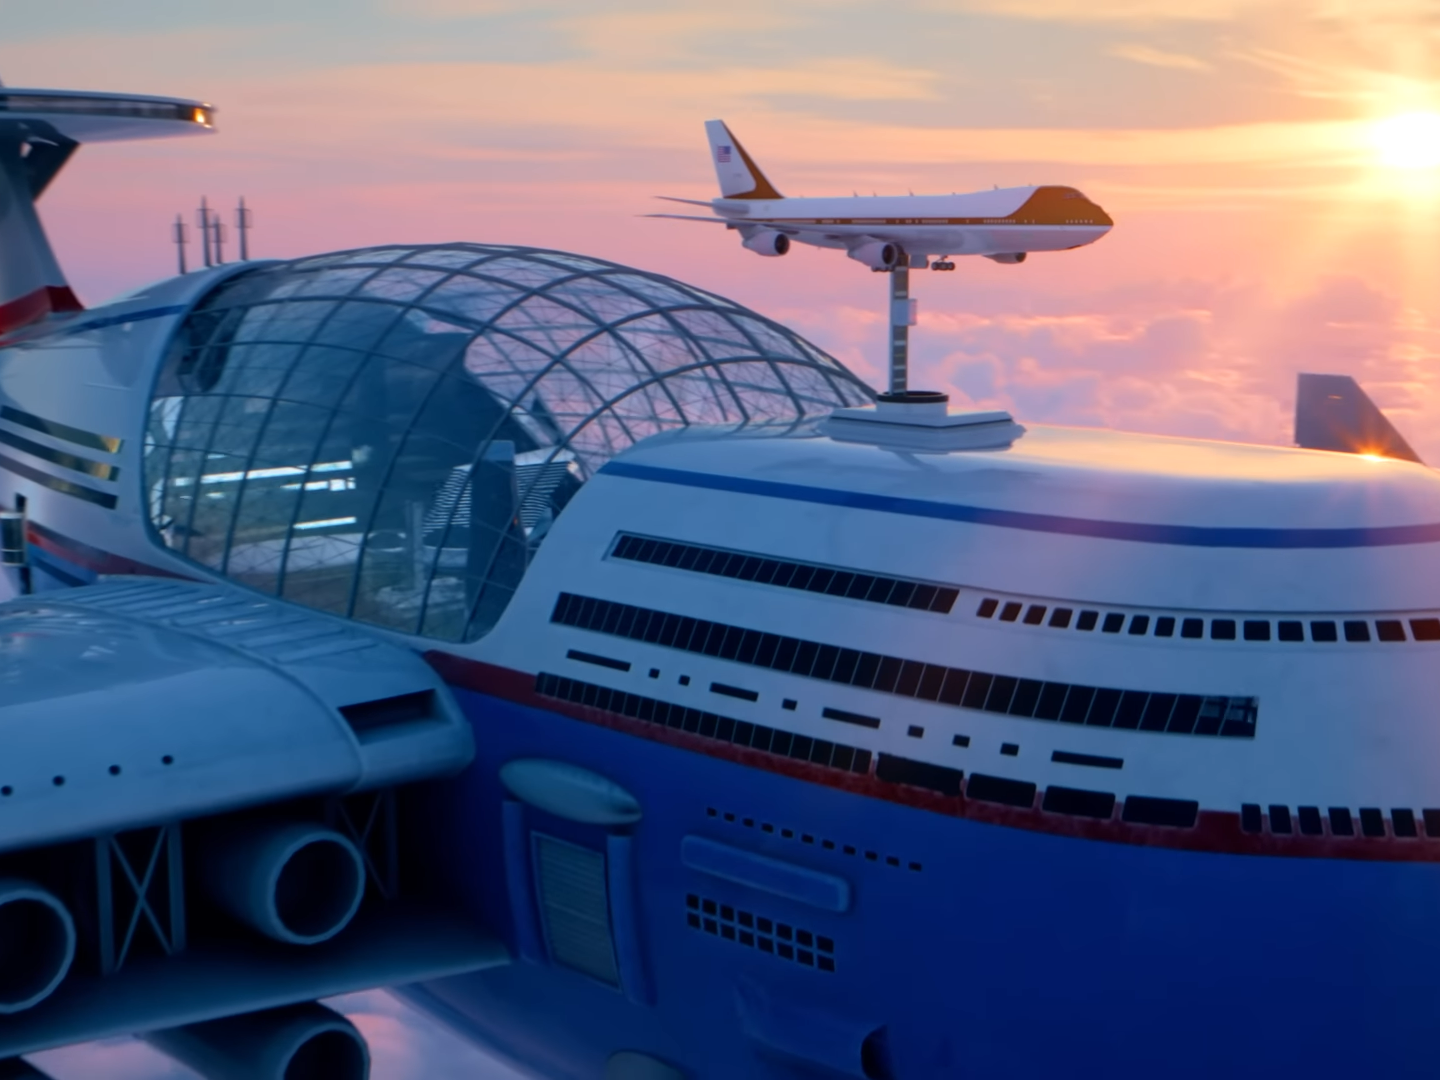 Sky Cruise ist das nukleare Flugschiff, das von Hashem Al-Ghaili entworfen wurde